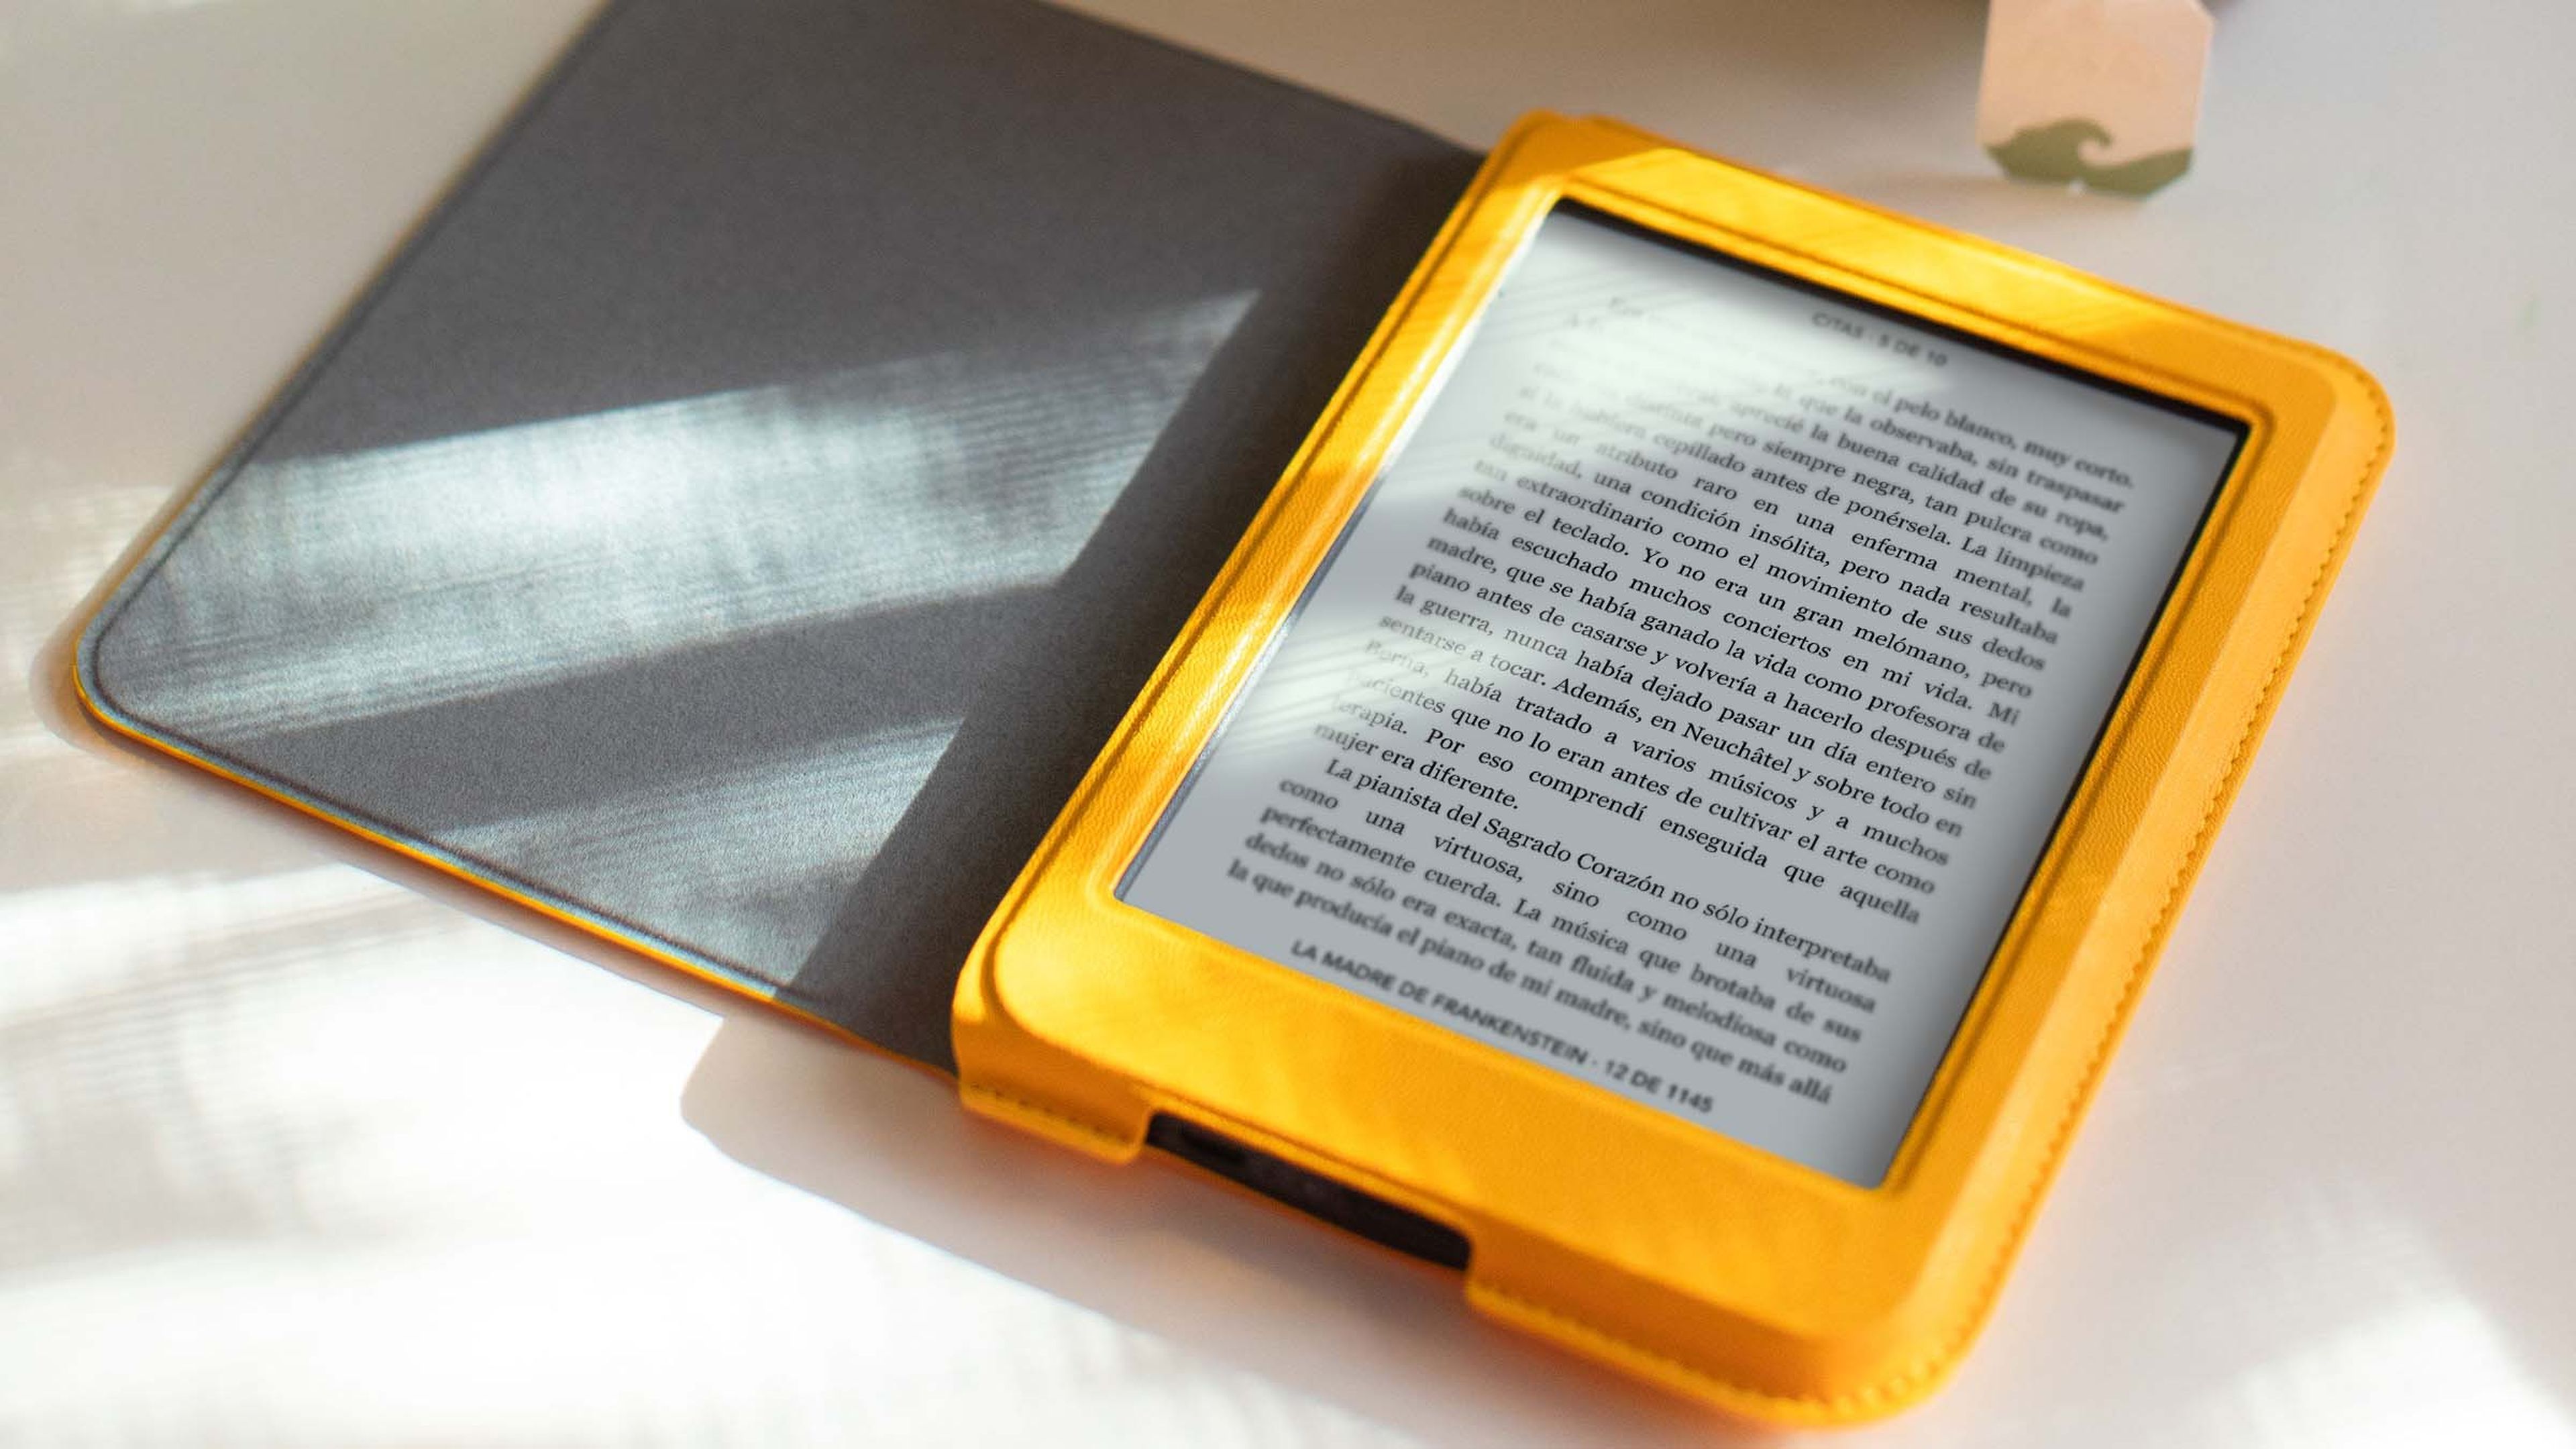 Hay vida más allá del Kindle: alternativas al lector electrónico